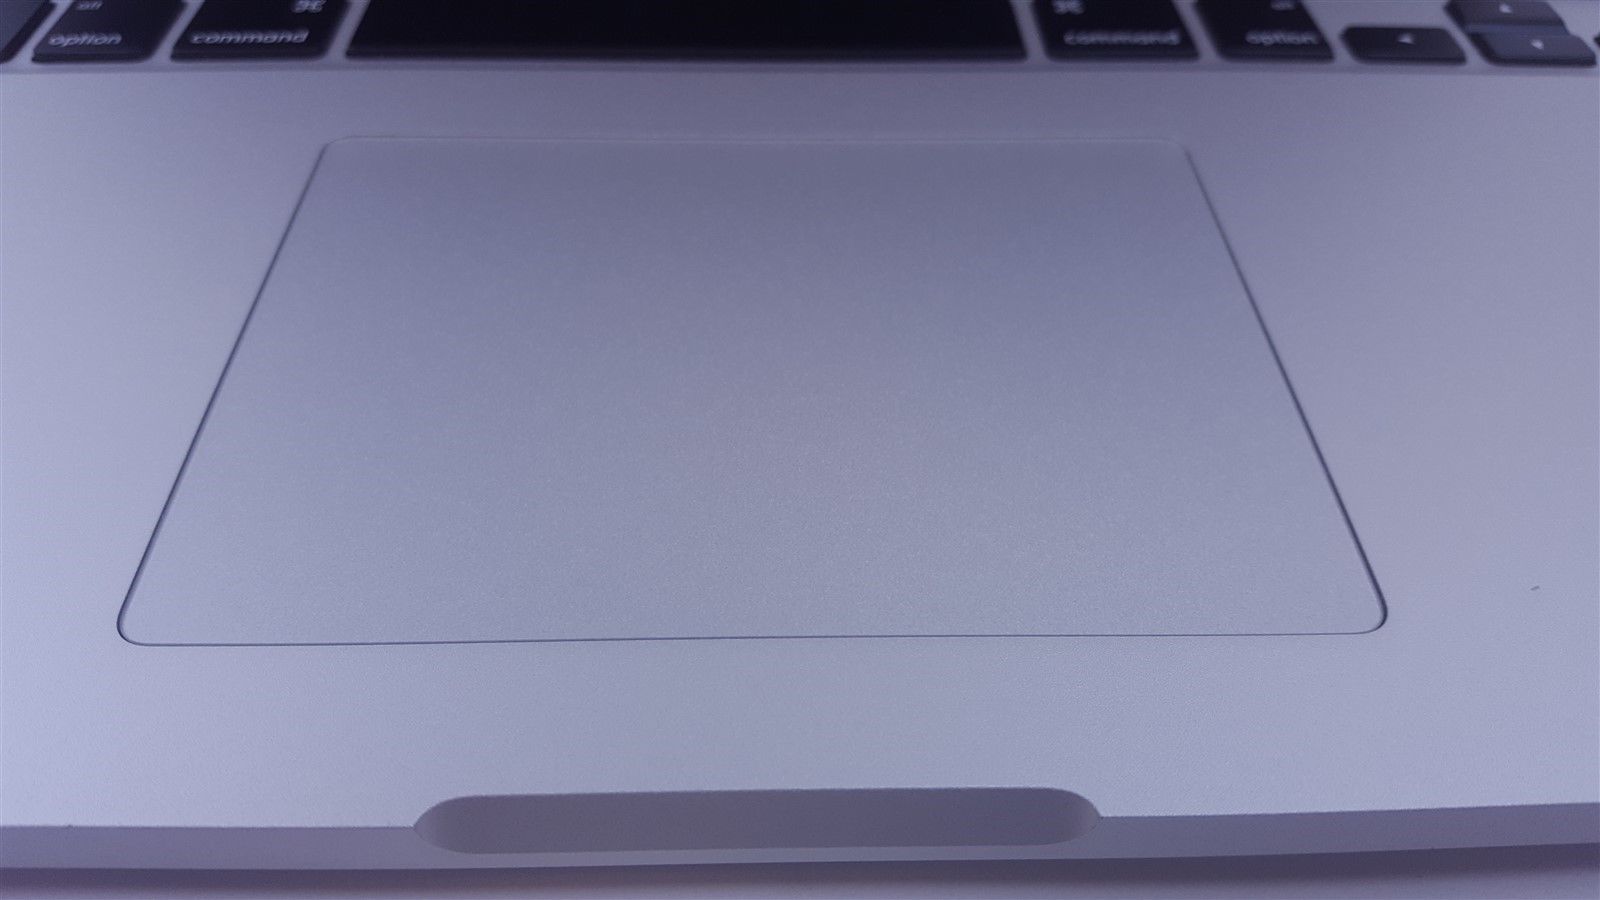 Apple Macbook Pro A1398 Retina 15.4" I7 2.2Hz 16Gb 256GB SSD Mid 2014 MGXA2LL/A